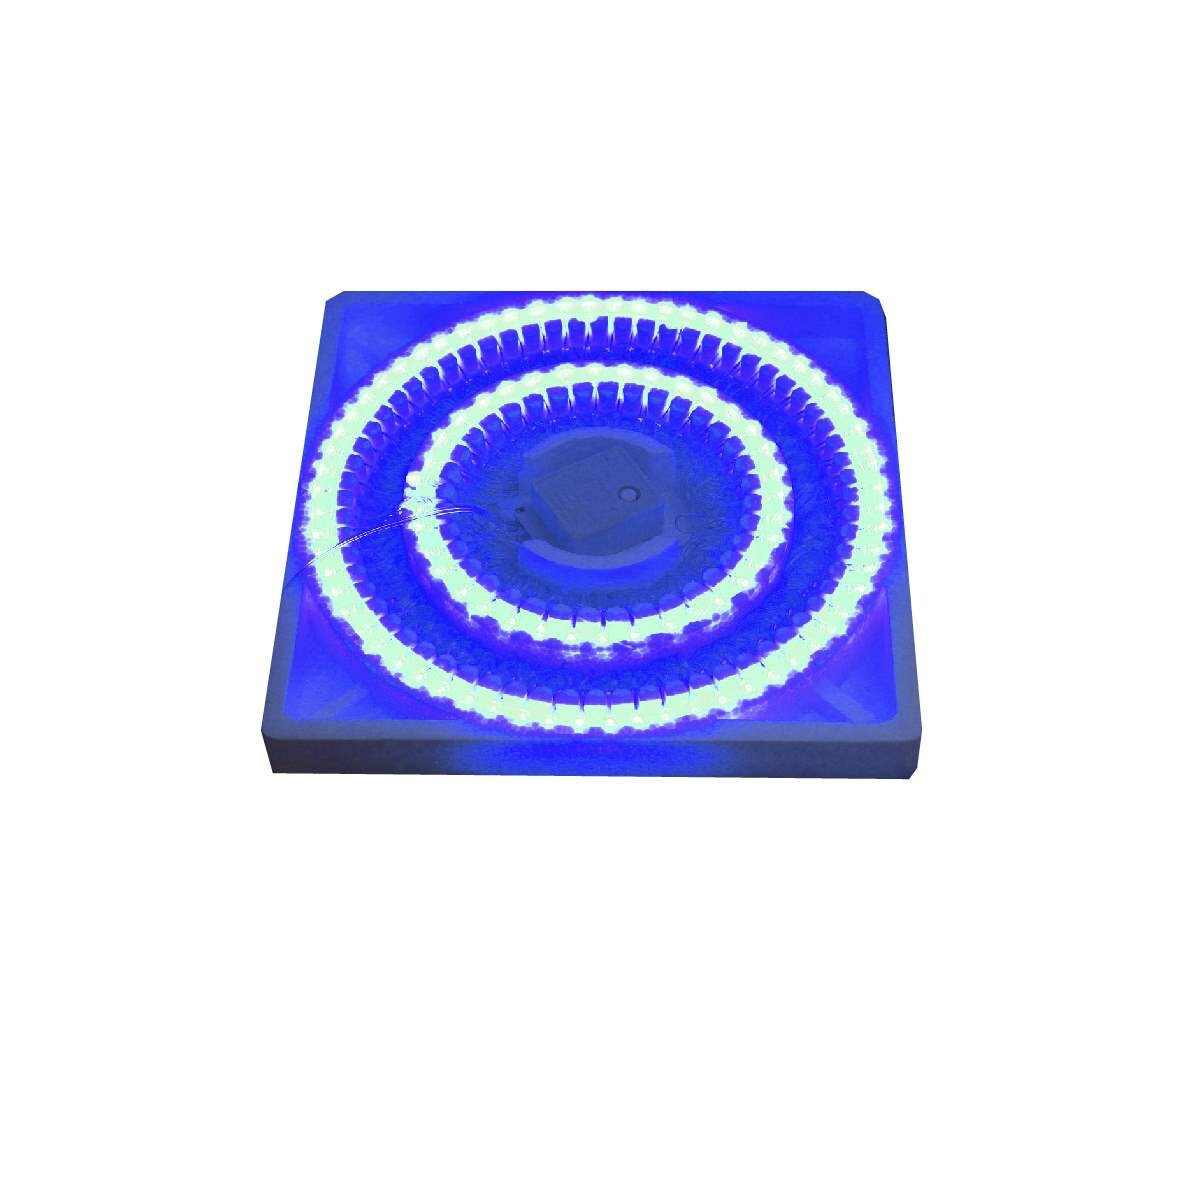 100 Luces Led 6mts - 8 Funciones - Color Azul 